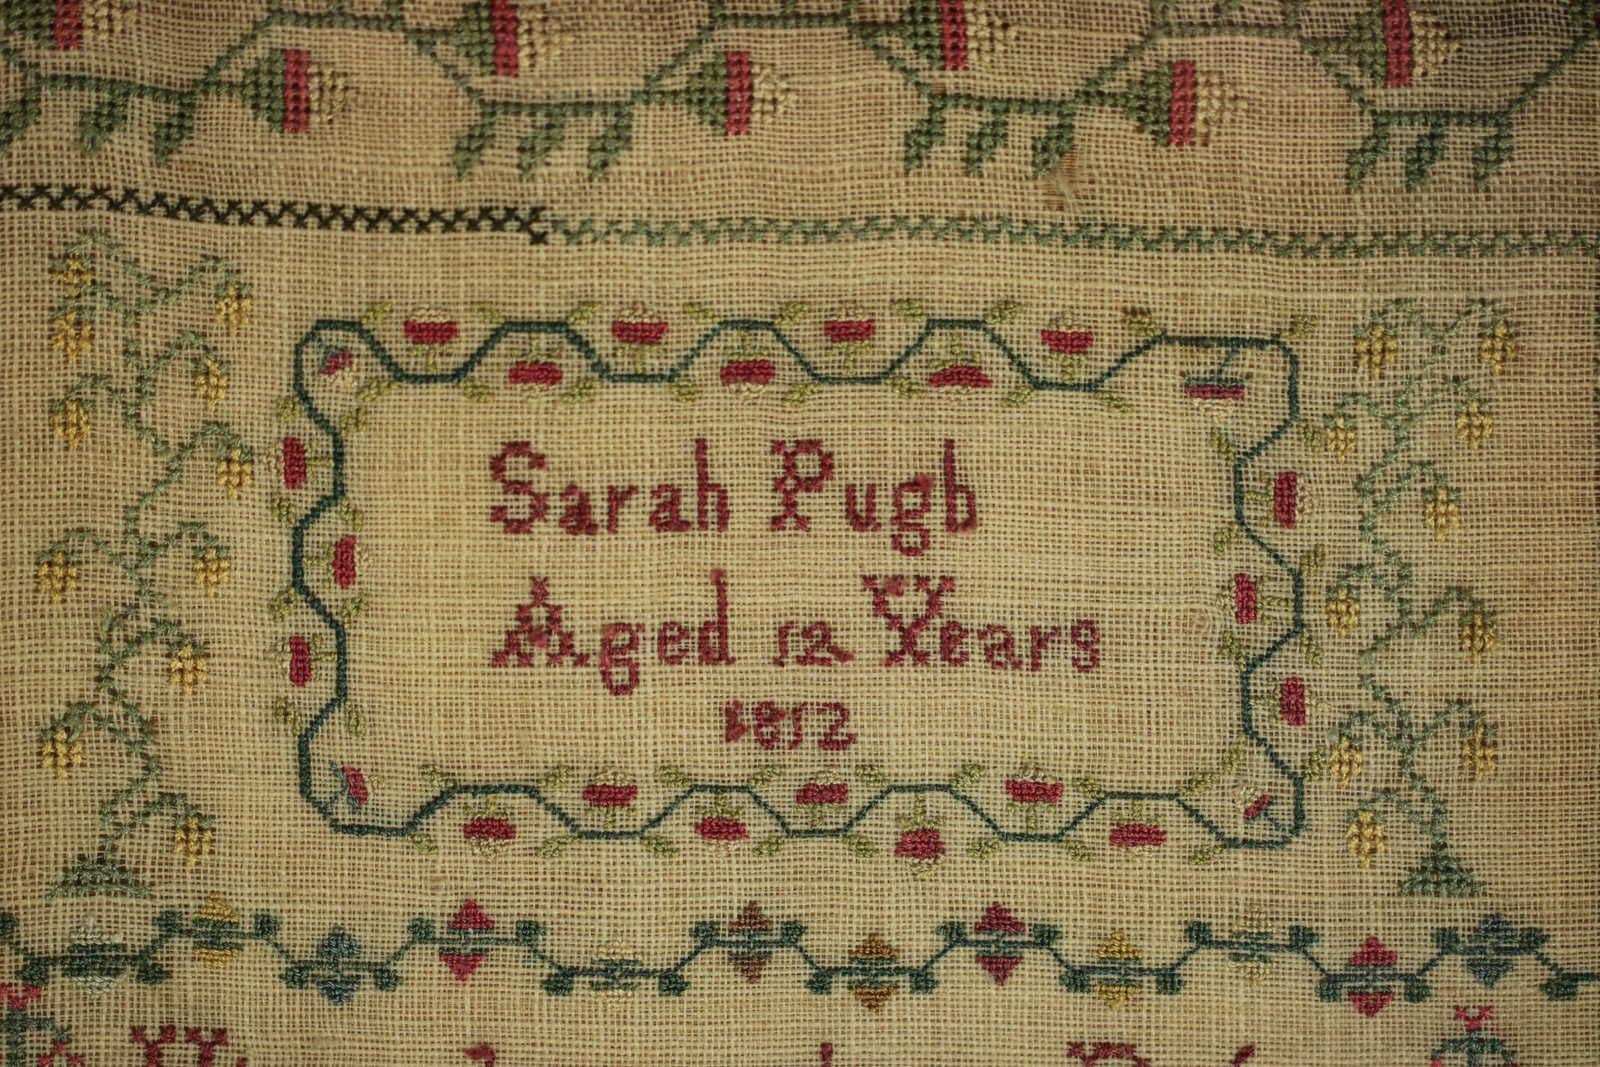 Embroidered Antique Scottish Sampler, 1812, by Sarah Pugh Aged 12